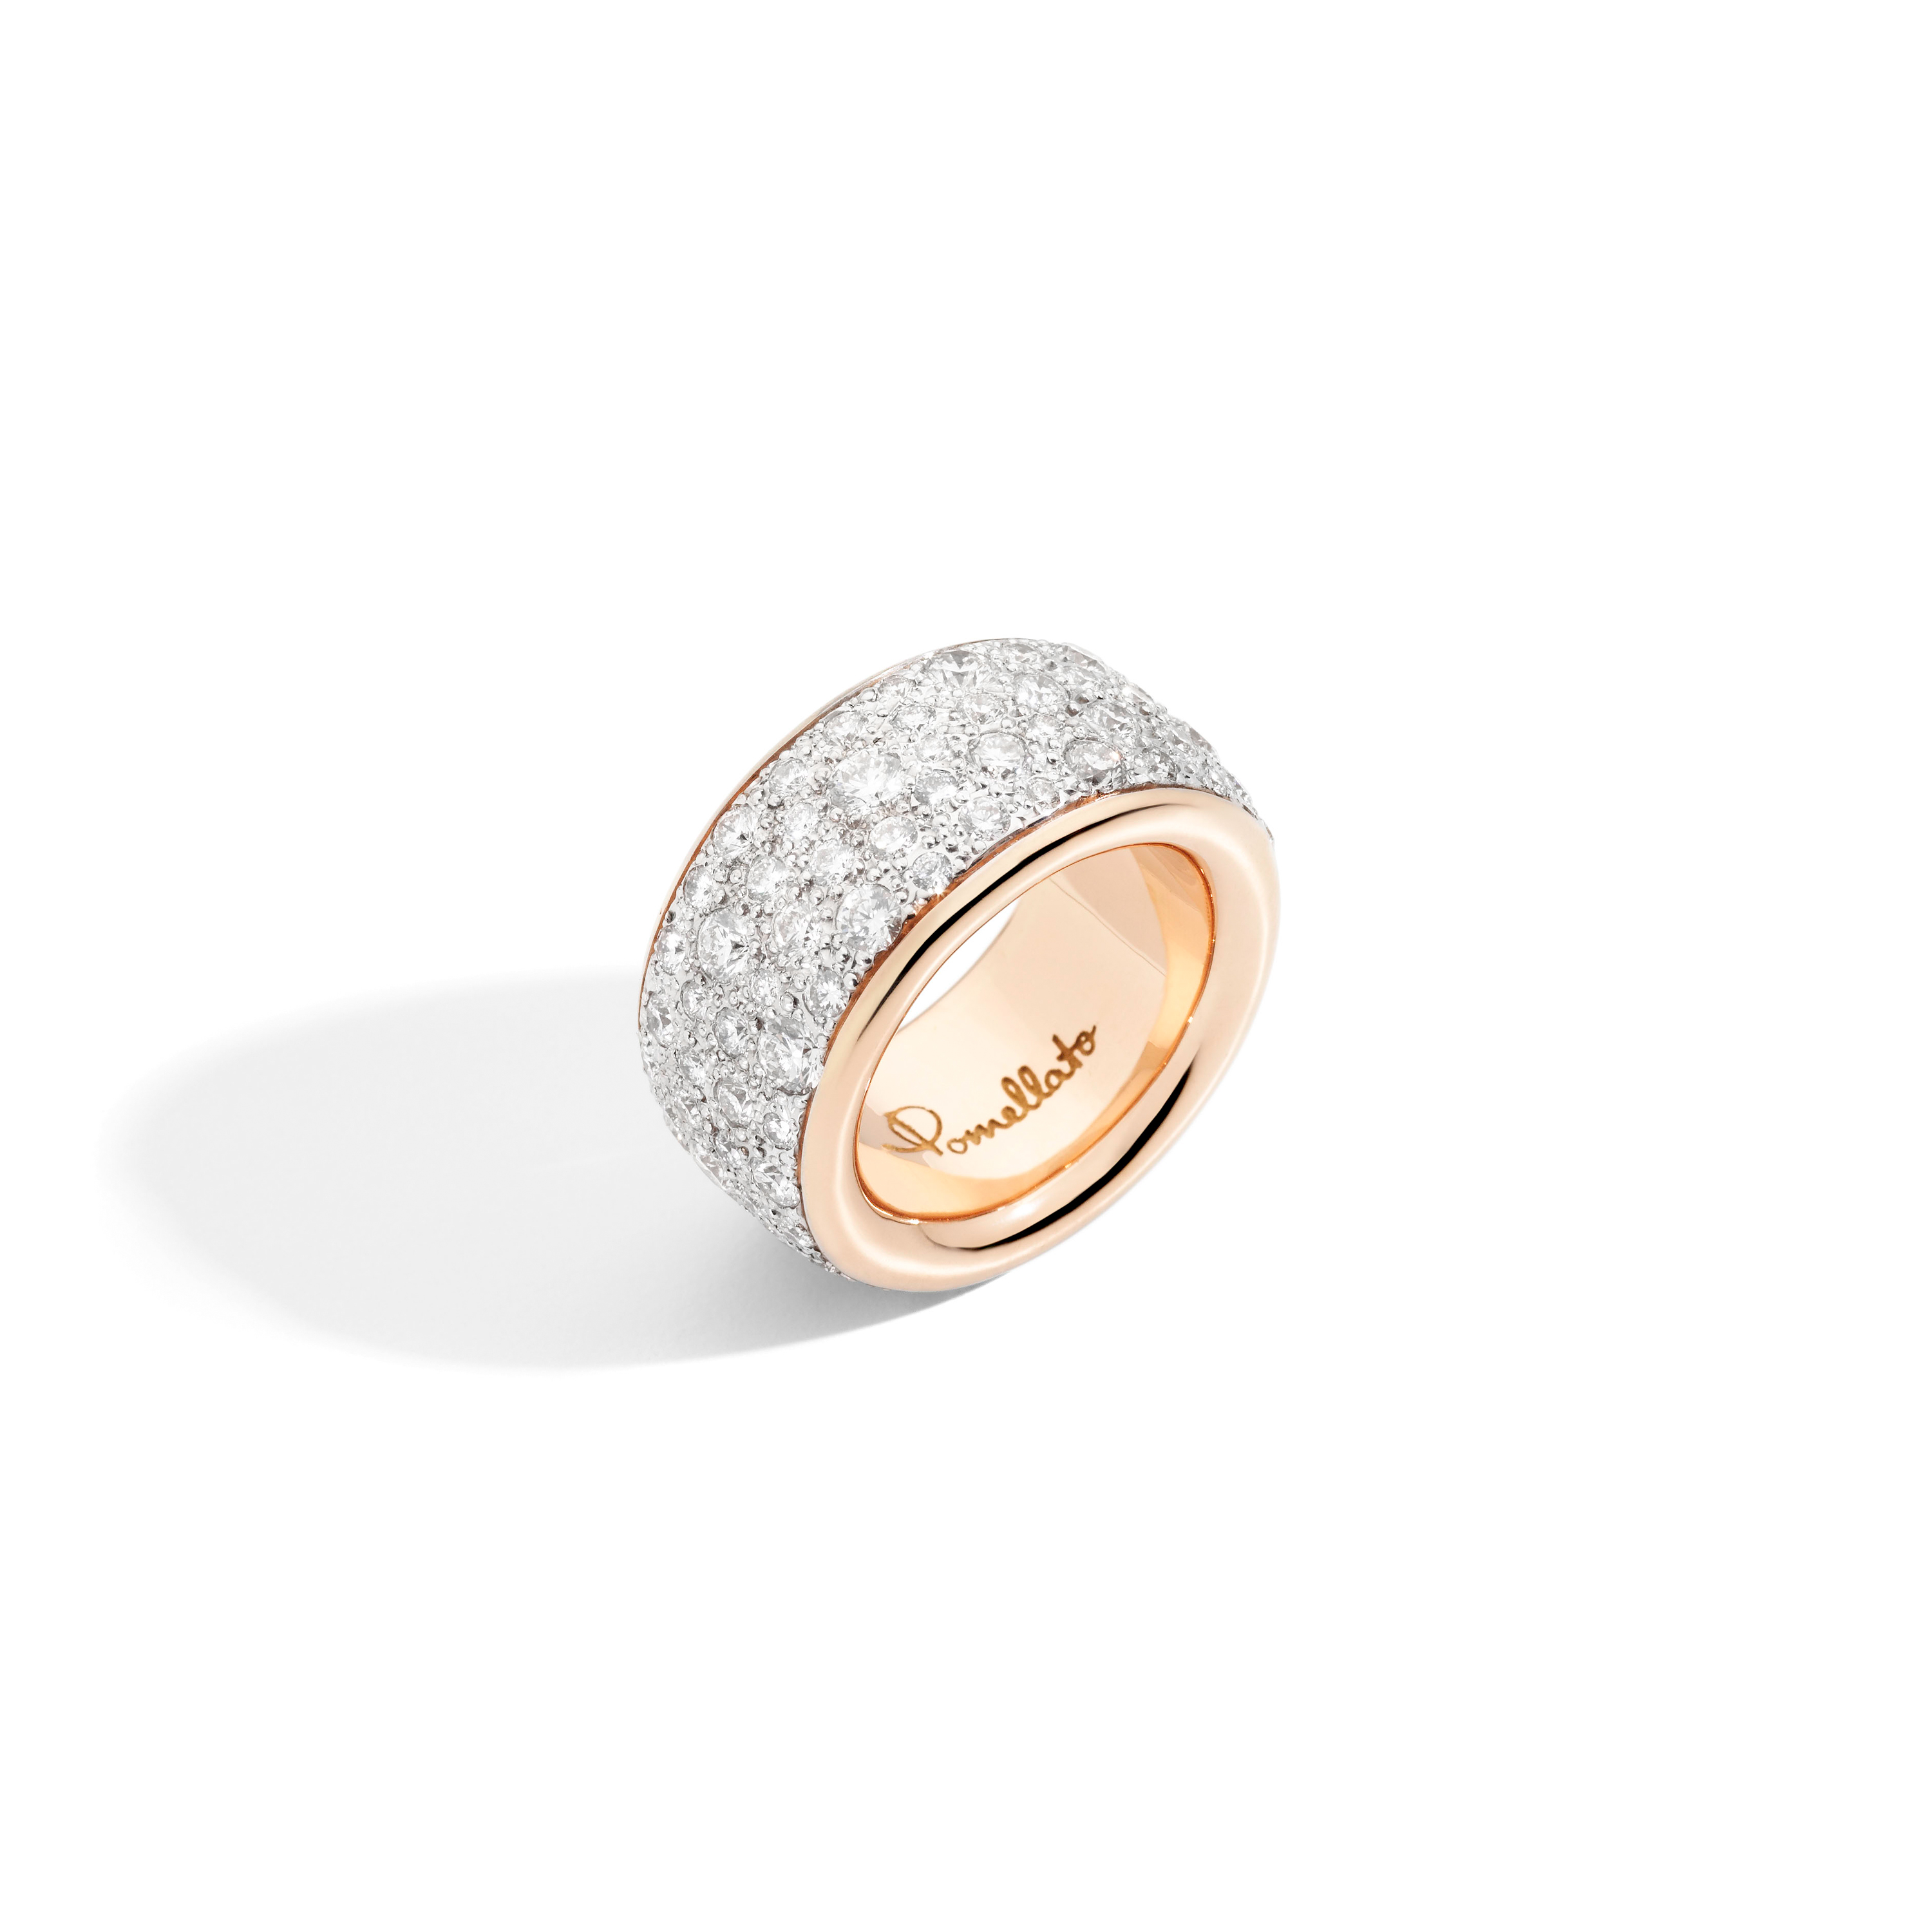 Ster voor Toeschouwer Iconica Maxi ring met witte diamanten - Pomellato - Jewels - Steltman  Juweliers